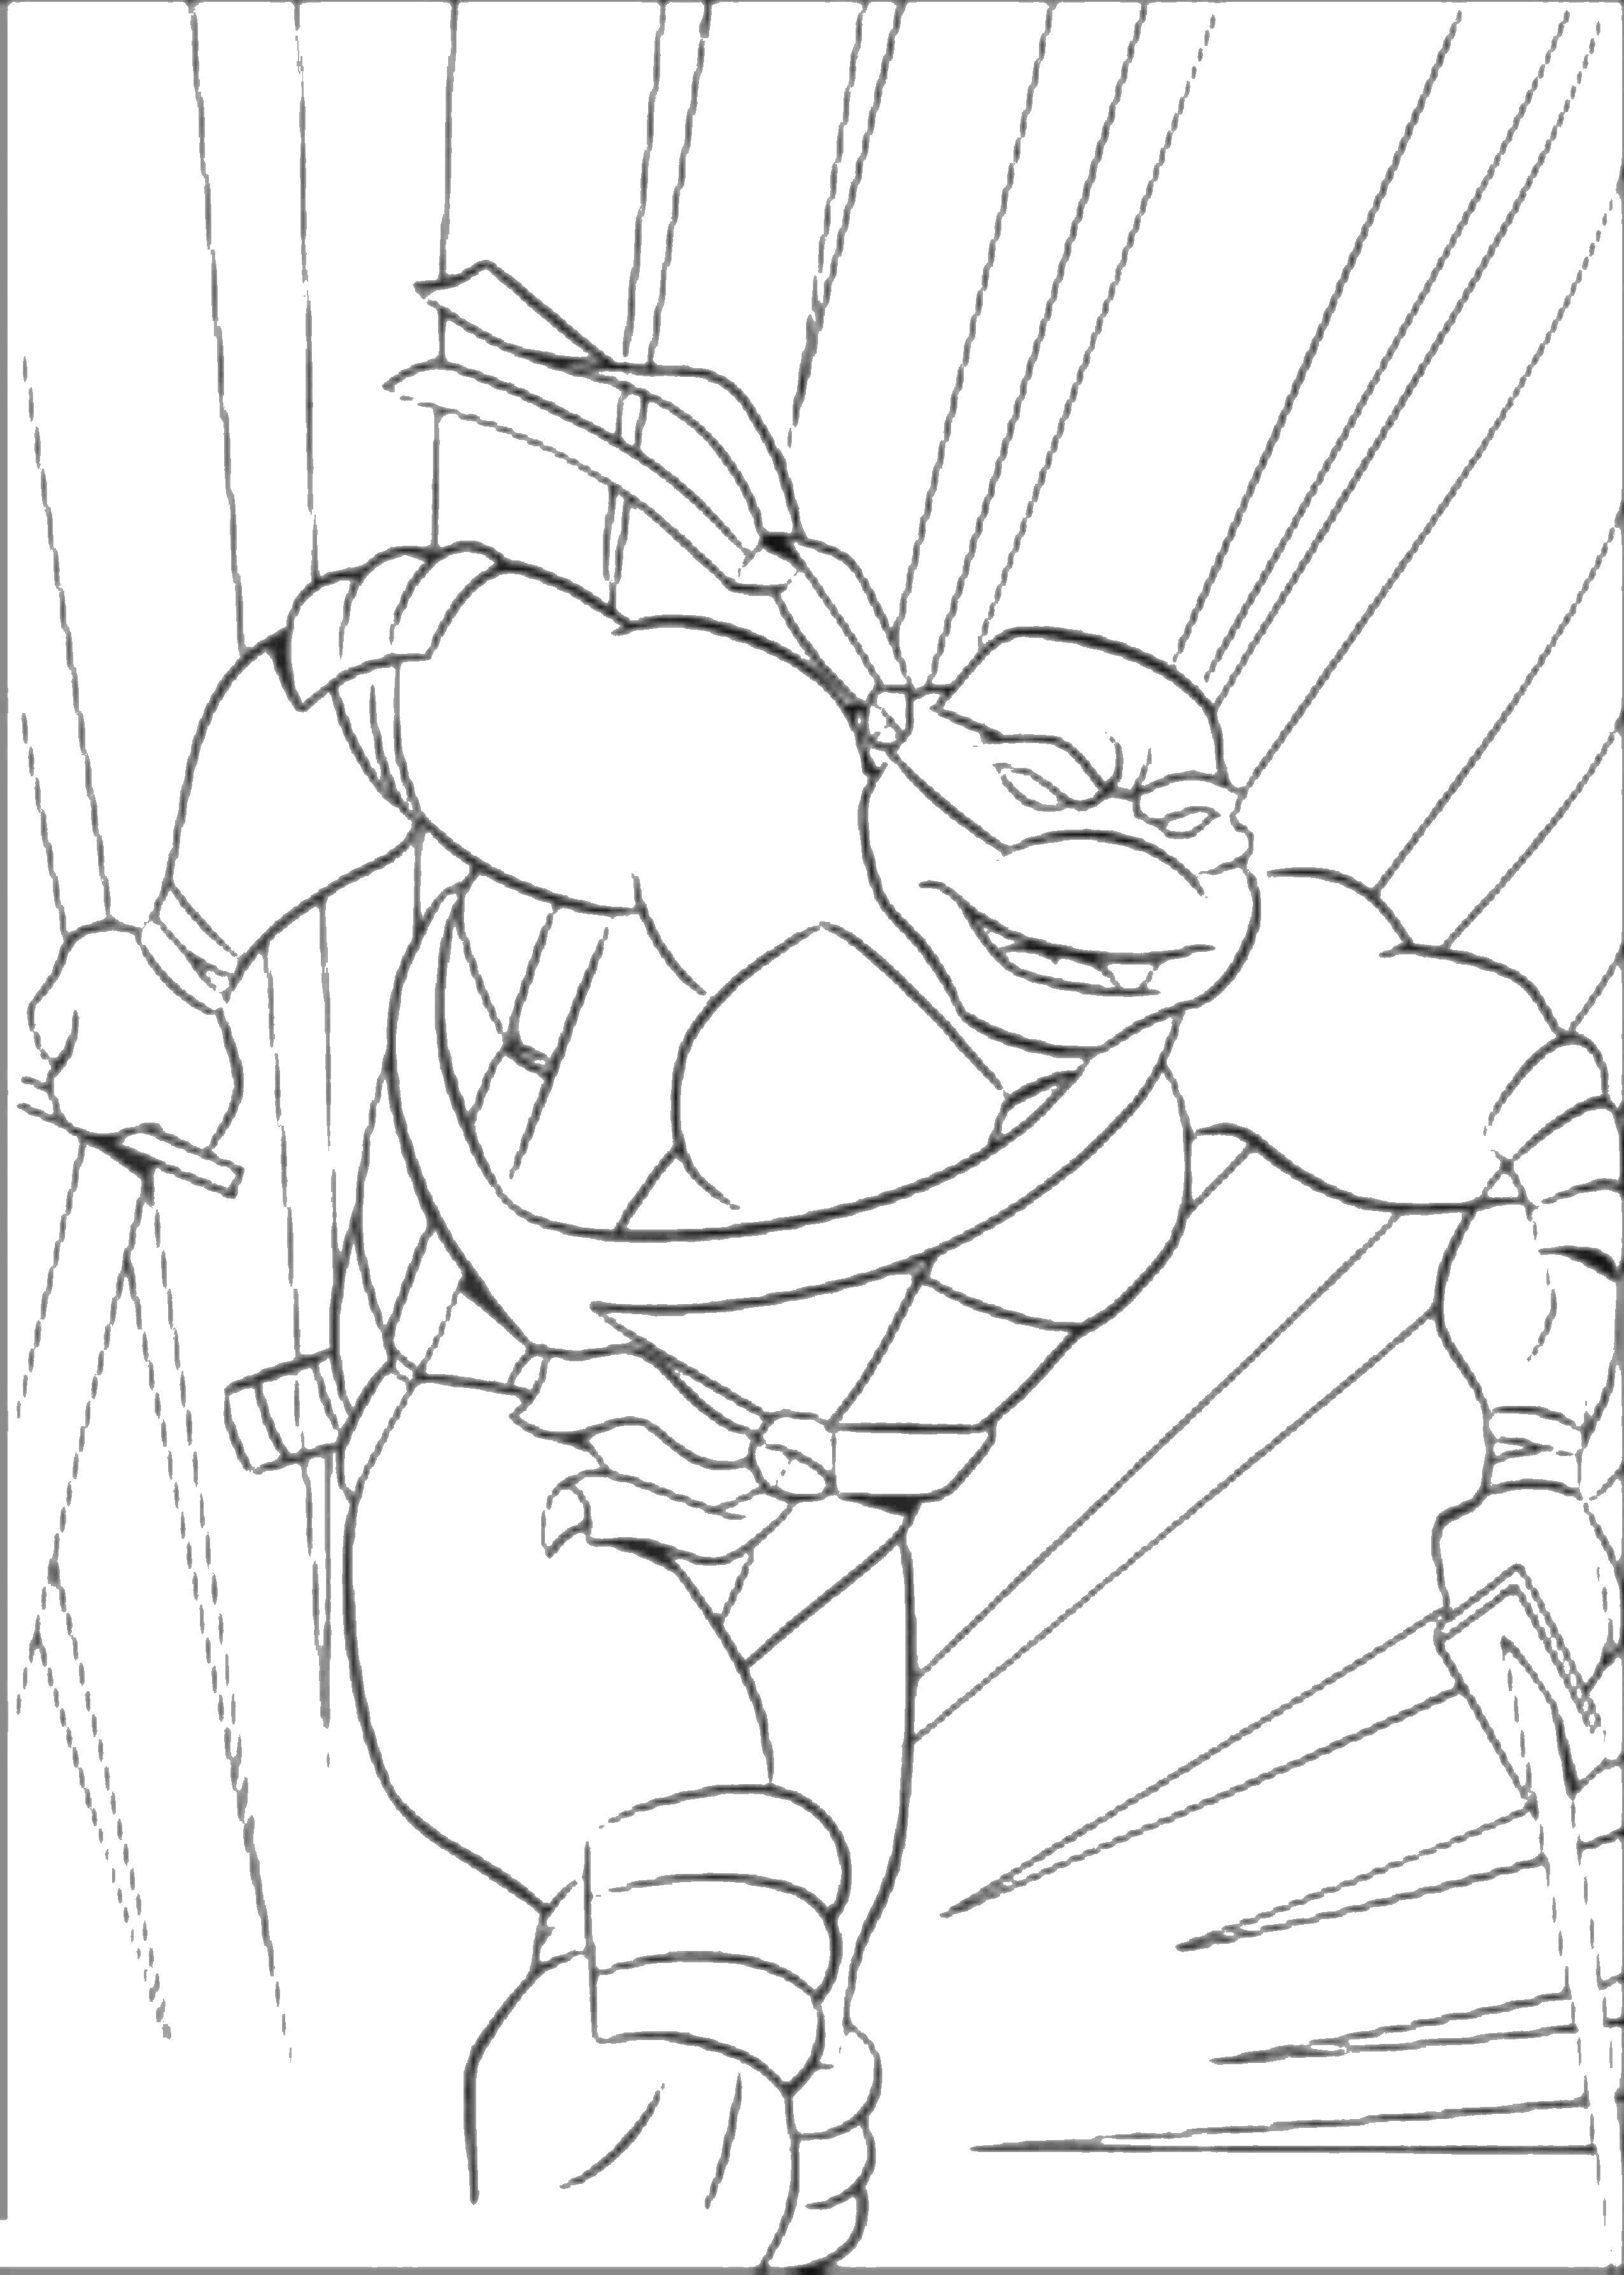 Coloring Teenage mutant ninja turtles. Category Cartoon character. Tags:  cartoons, chareuski, Ninja.